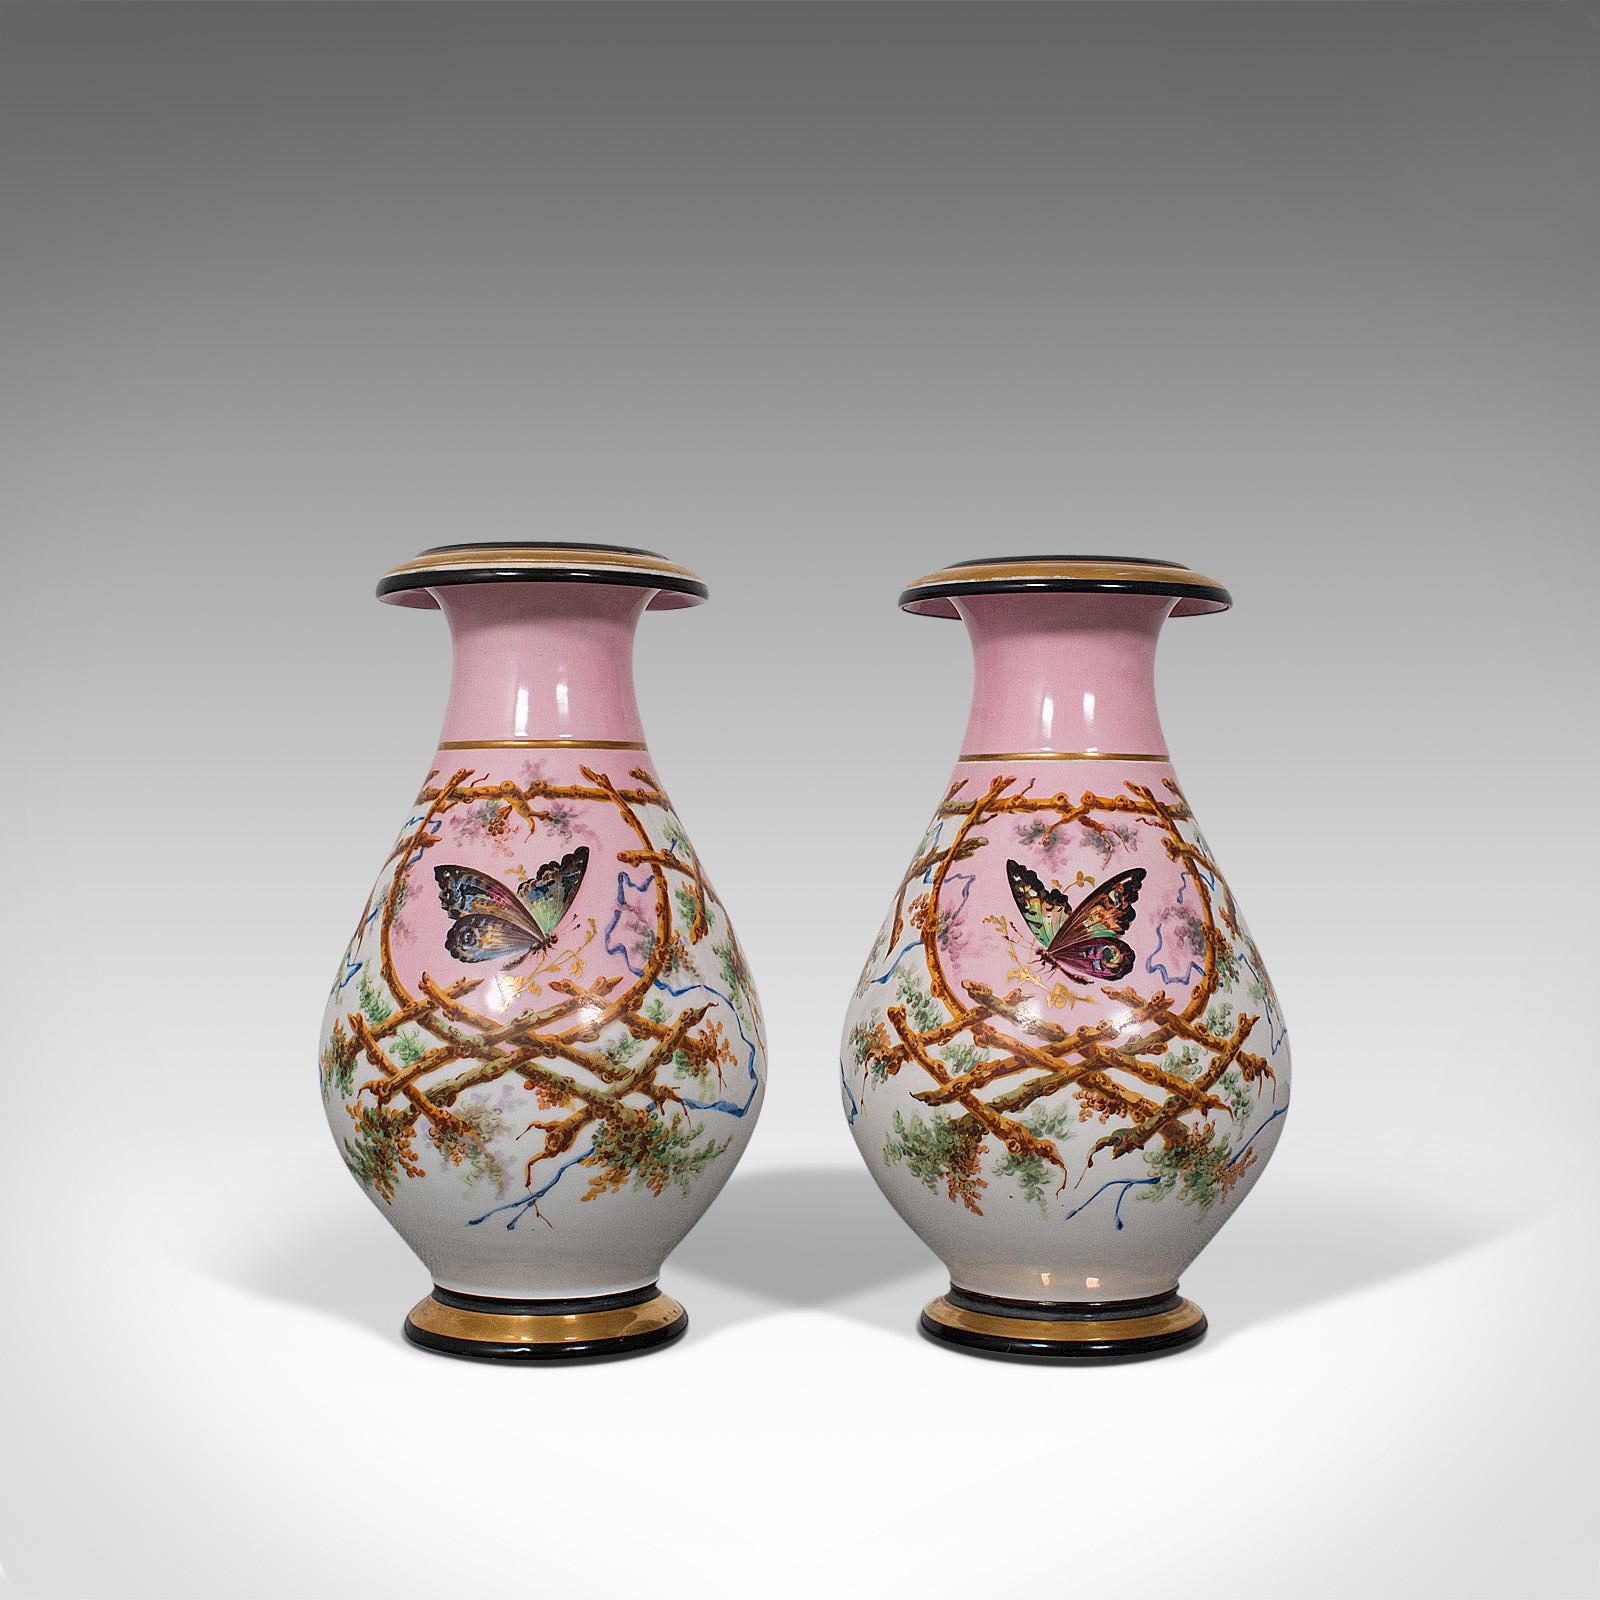 Dies ist ein antikes Paar von Pfingstrosenvasen. Französische, dekorative Balusterurne aus Keramik mit Schmetterlingen, aus der spätviktorianischen Zeit, um 1890.

Wunderbar dekorative antike französische Vasen
Mit begehrenswerter Alterspatina,